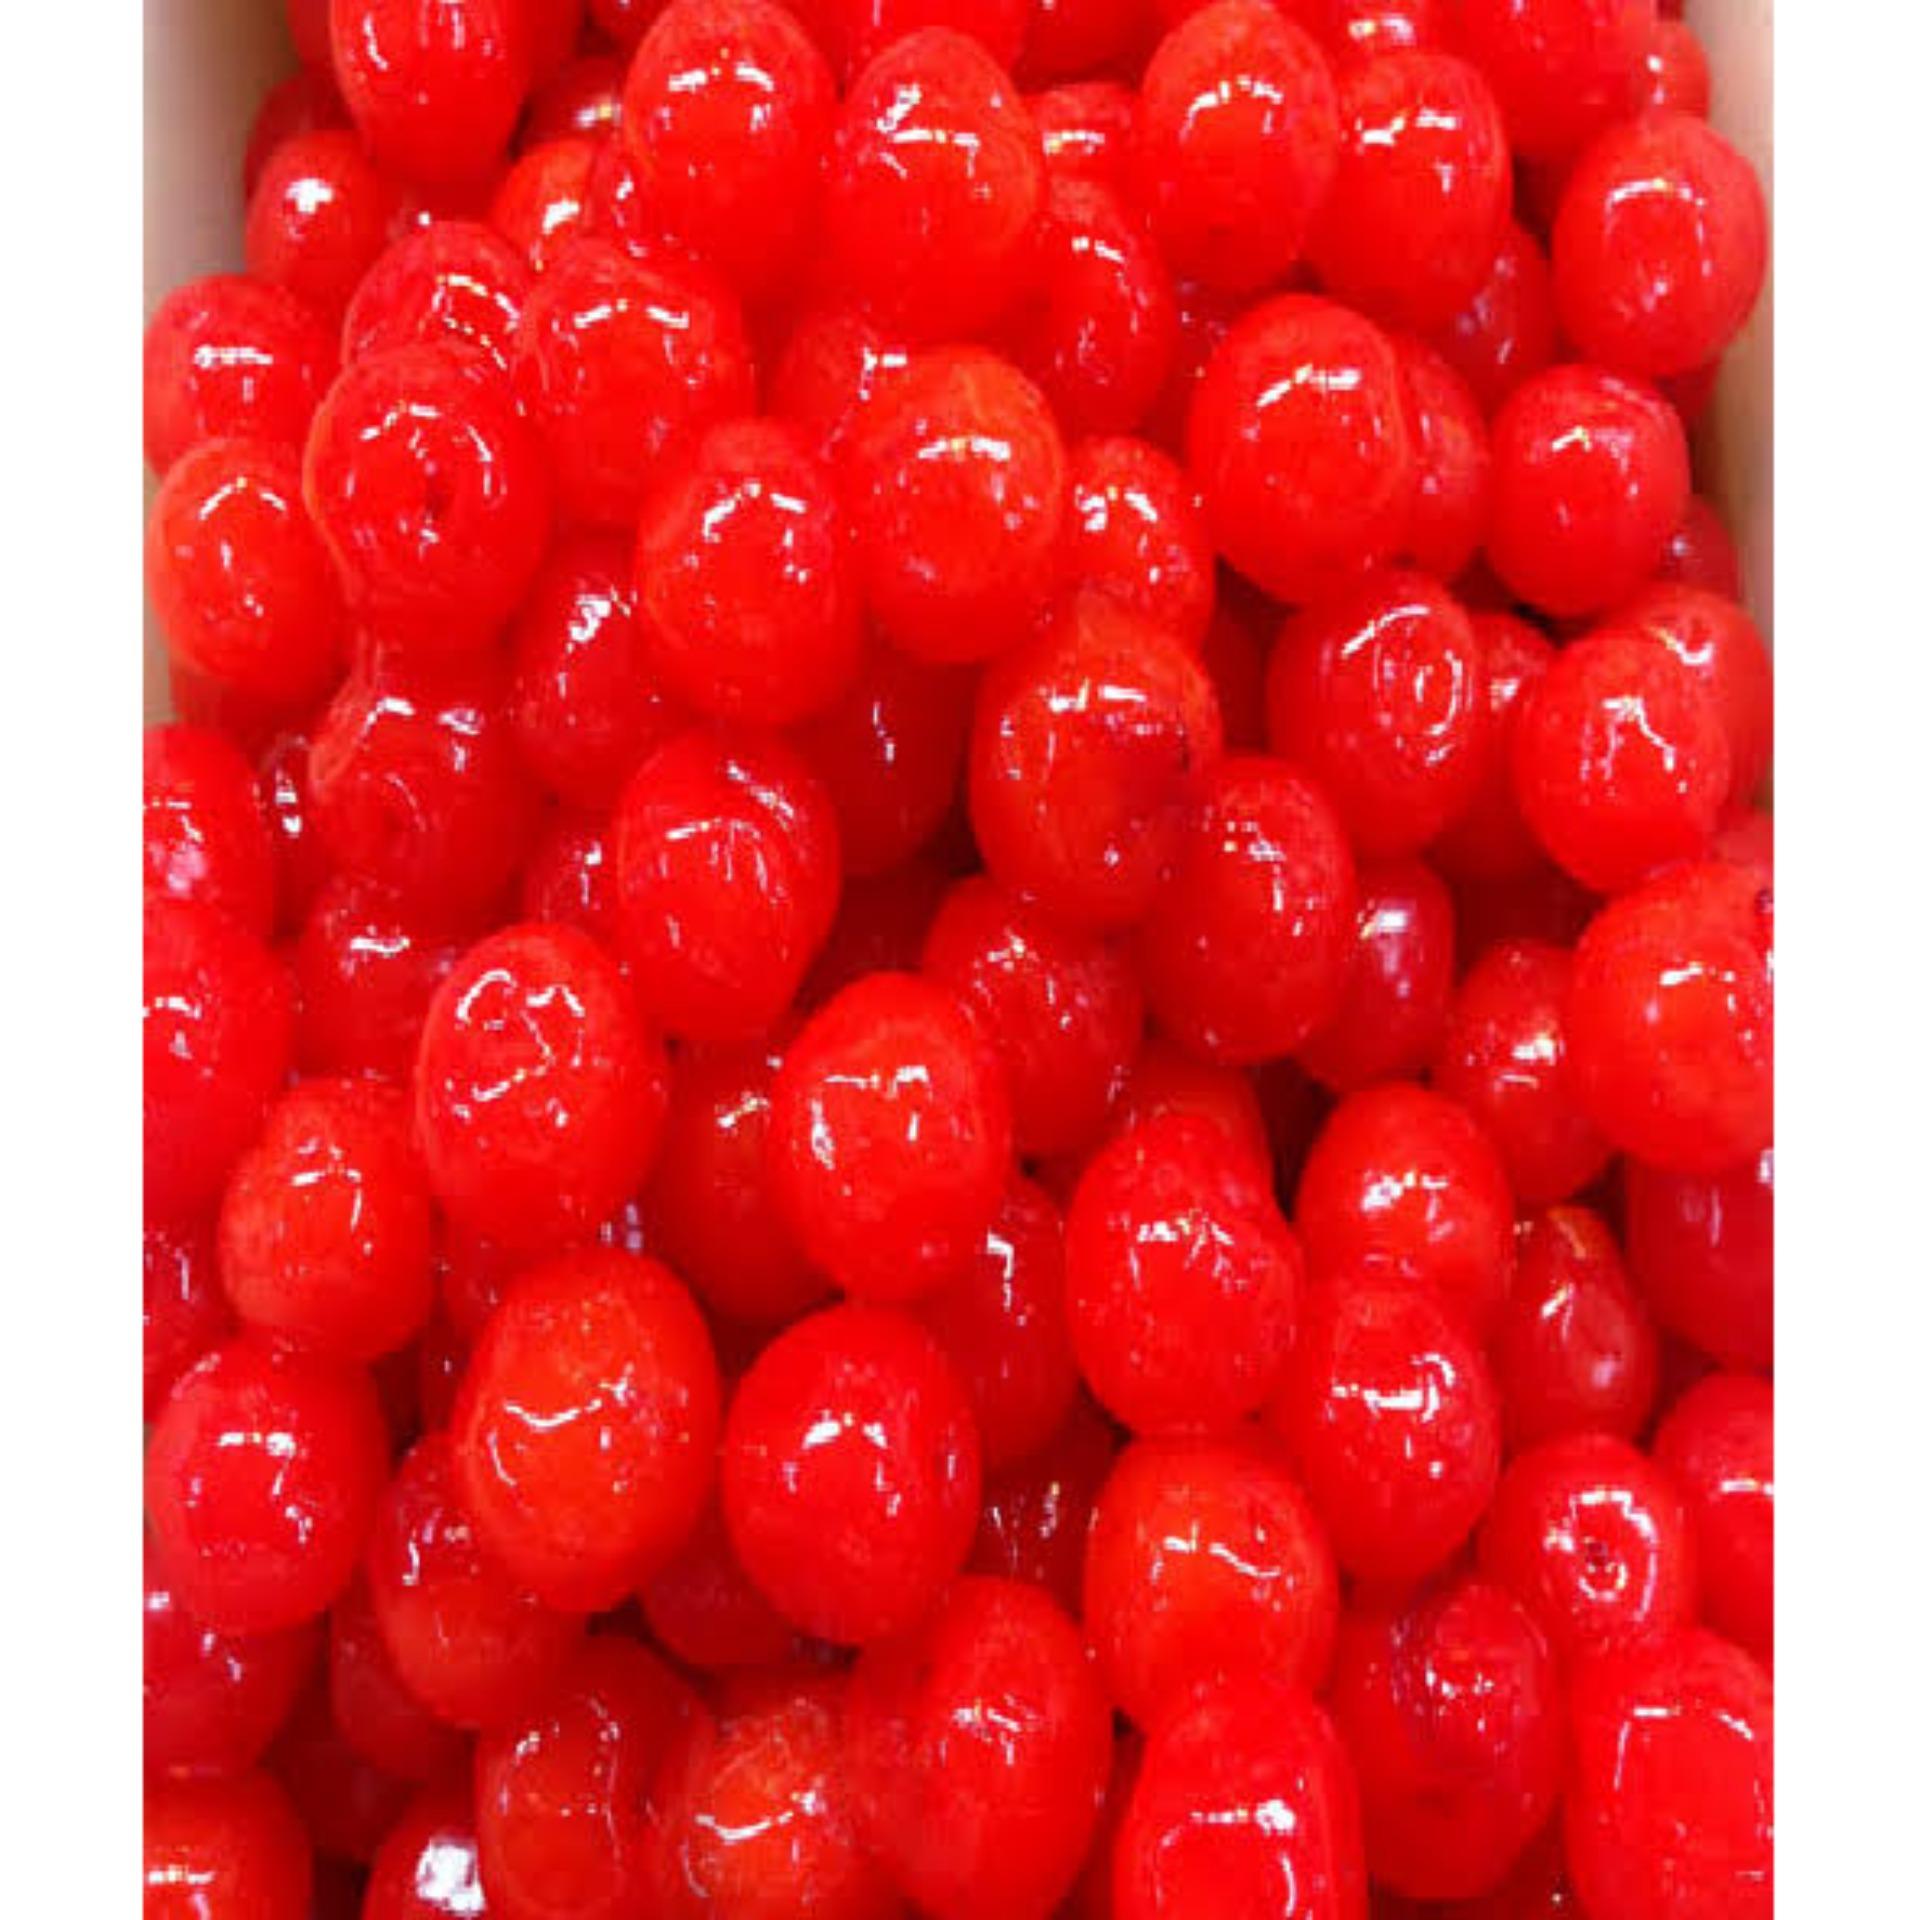 จัดส่งฟรี เชอรี่แดงแช่อิ่ม 300 กรัม - Crystallized red cherry 300 g - ขนมไทย ขนม OTOP ราคาถูกที่สุด